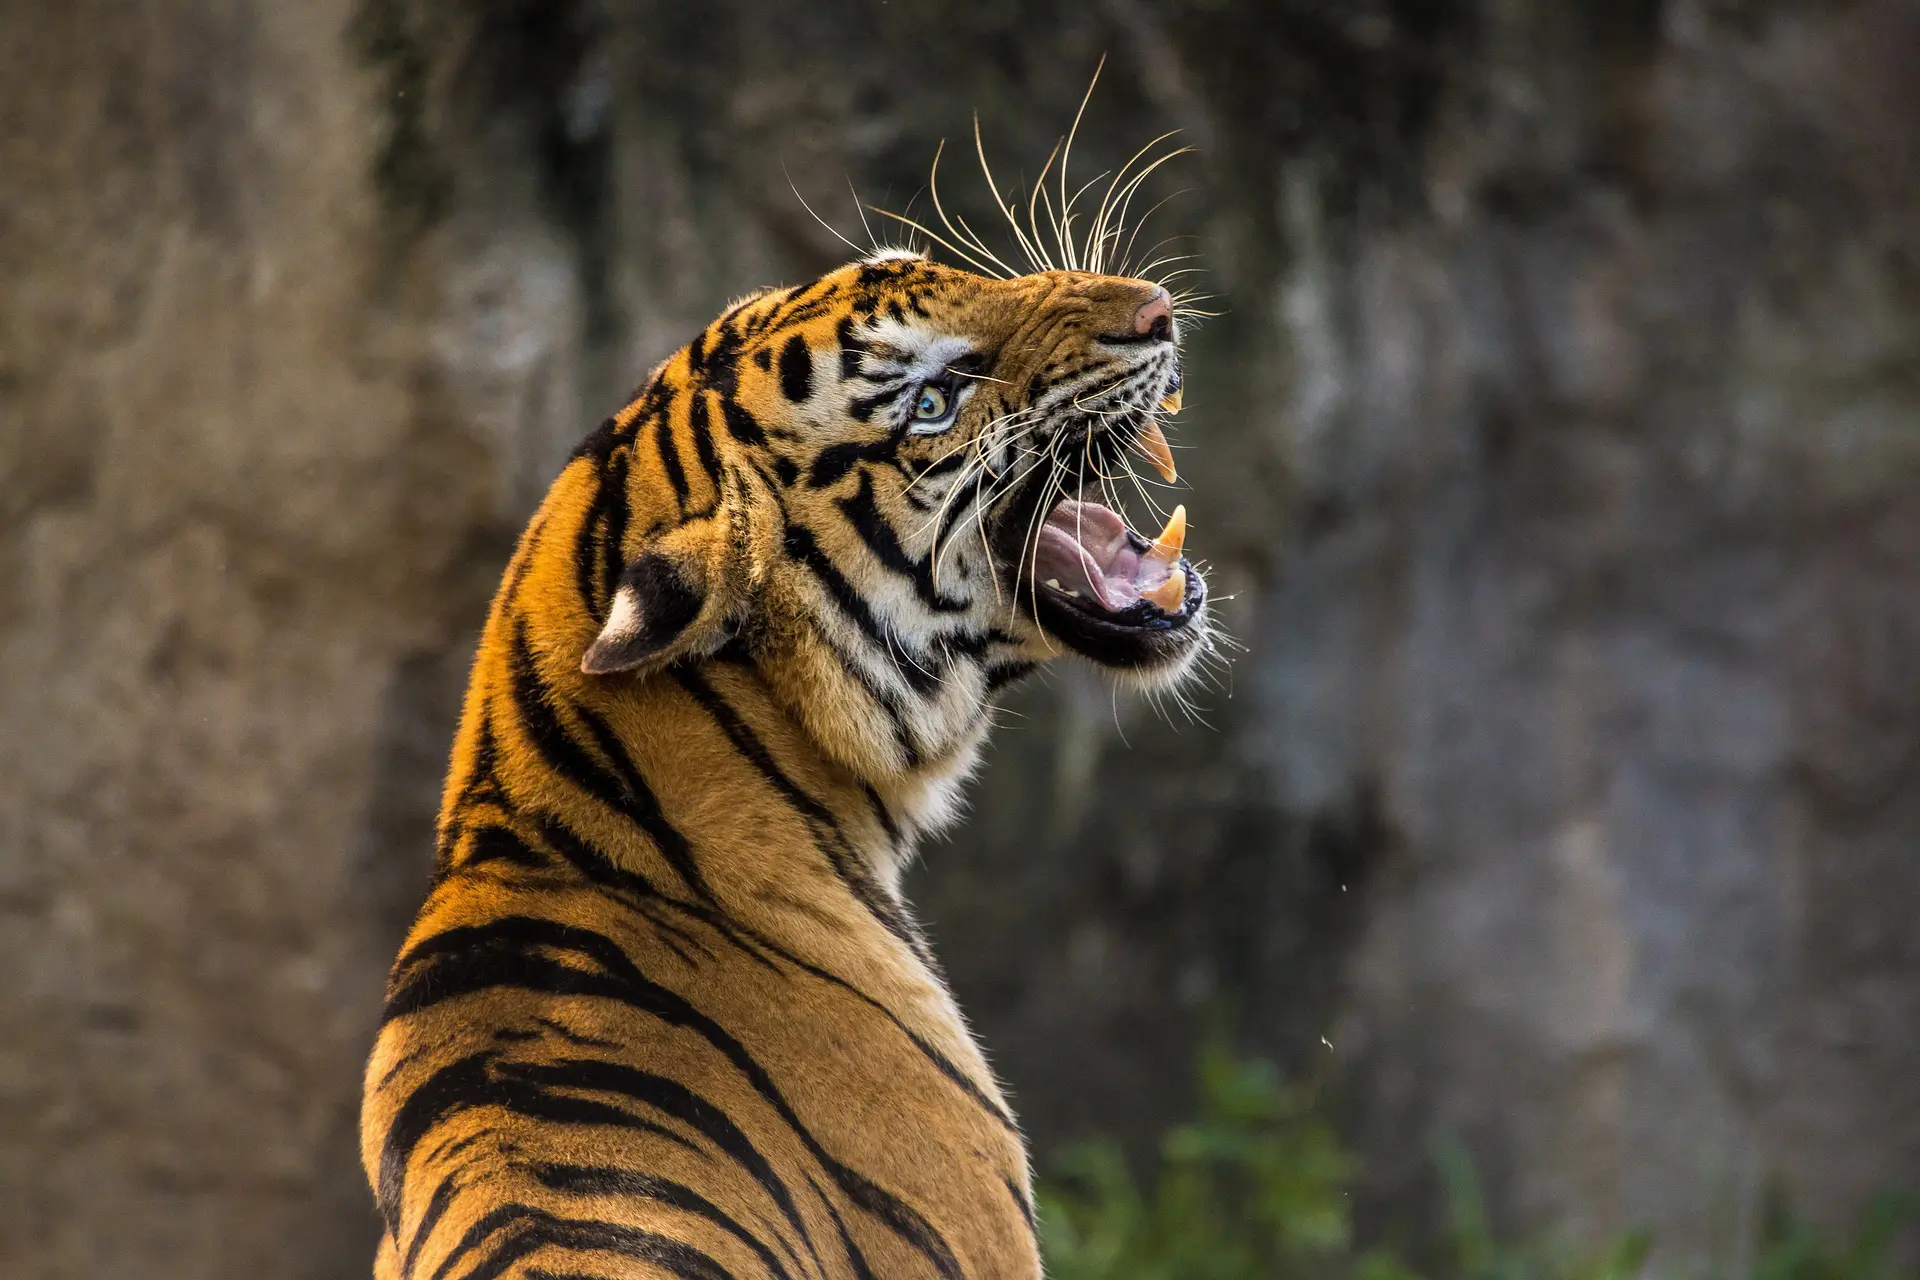 Tiger of Gorewada Zoo Nagpur